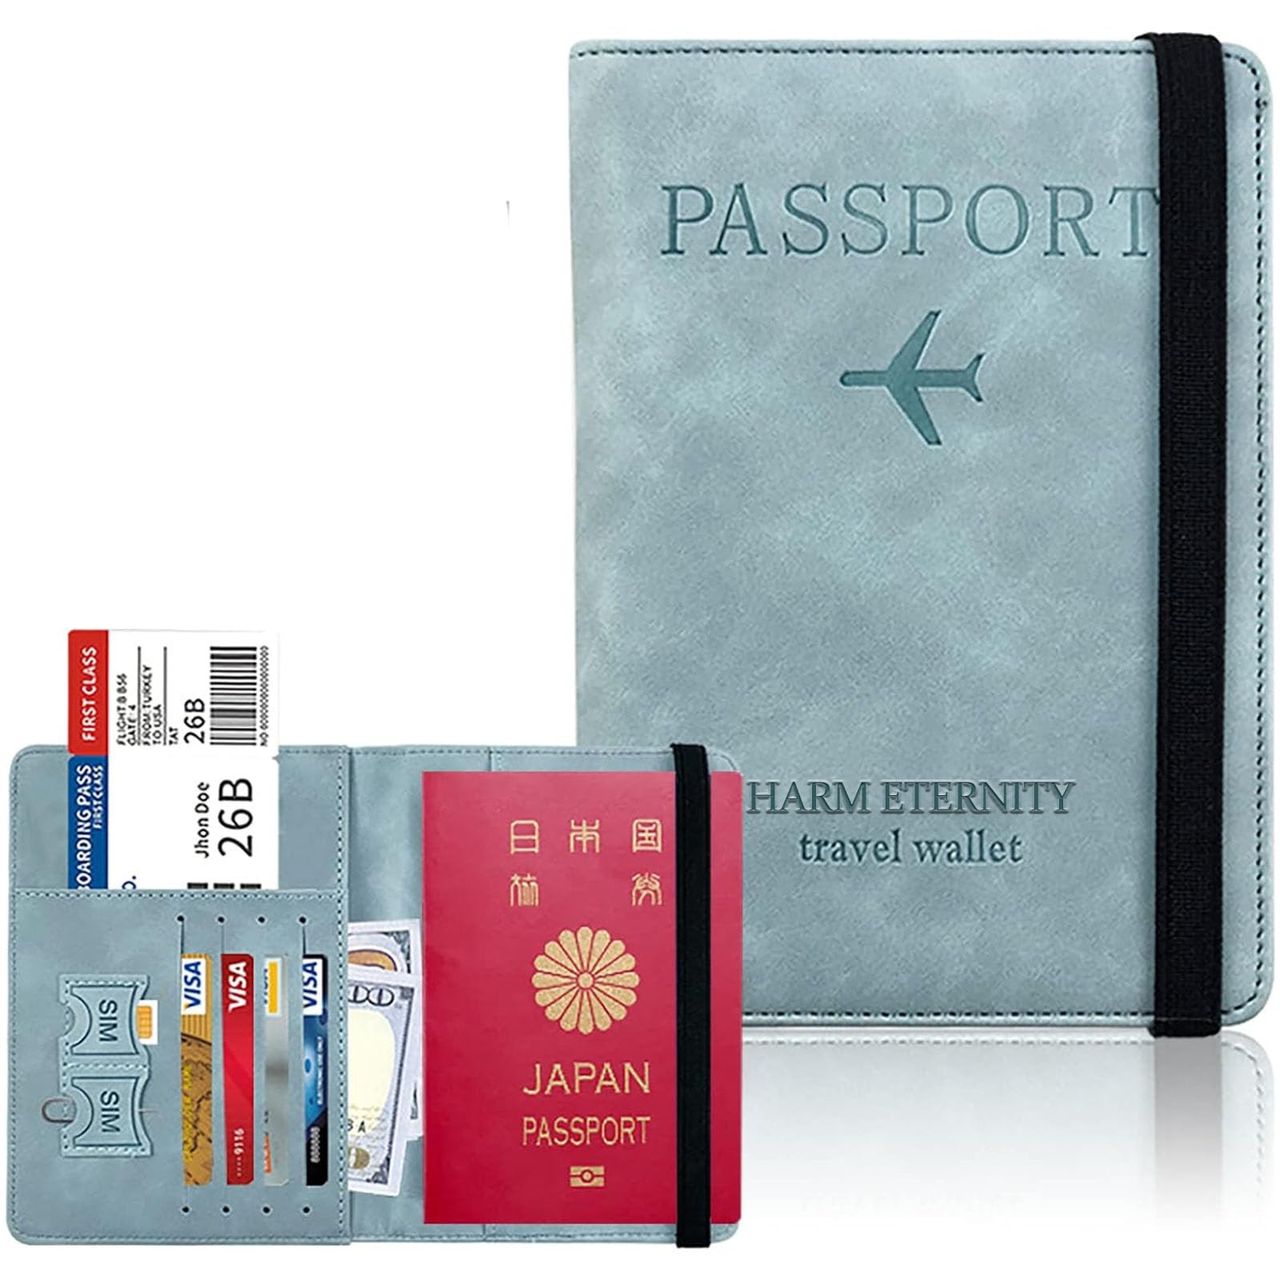 Vetntihose フェイクレザー パスポートケース スキミング防止 パスポートカバー カードケース 多機能収納ポケット付き 国内海外旅行用品 トラベルウォレッド パスポートバッグ ポーチ 海外出張 (ライトブルー)